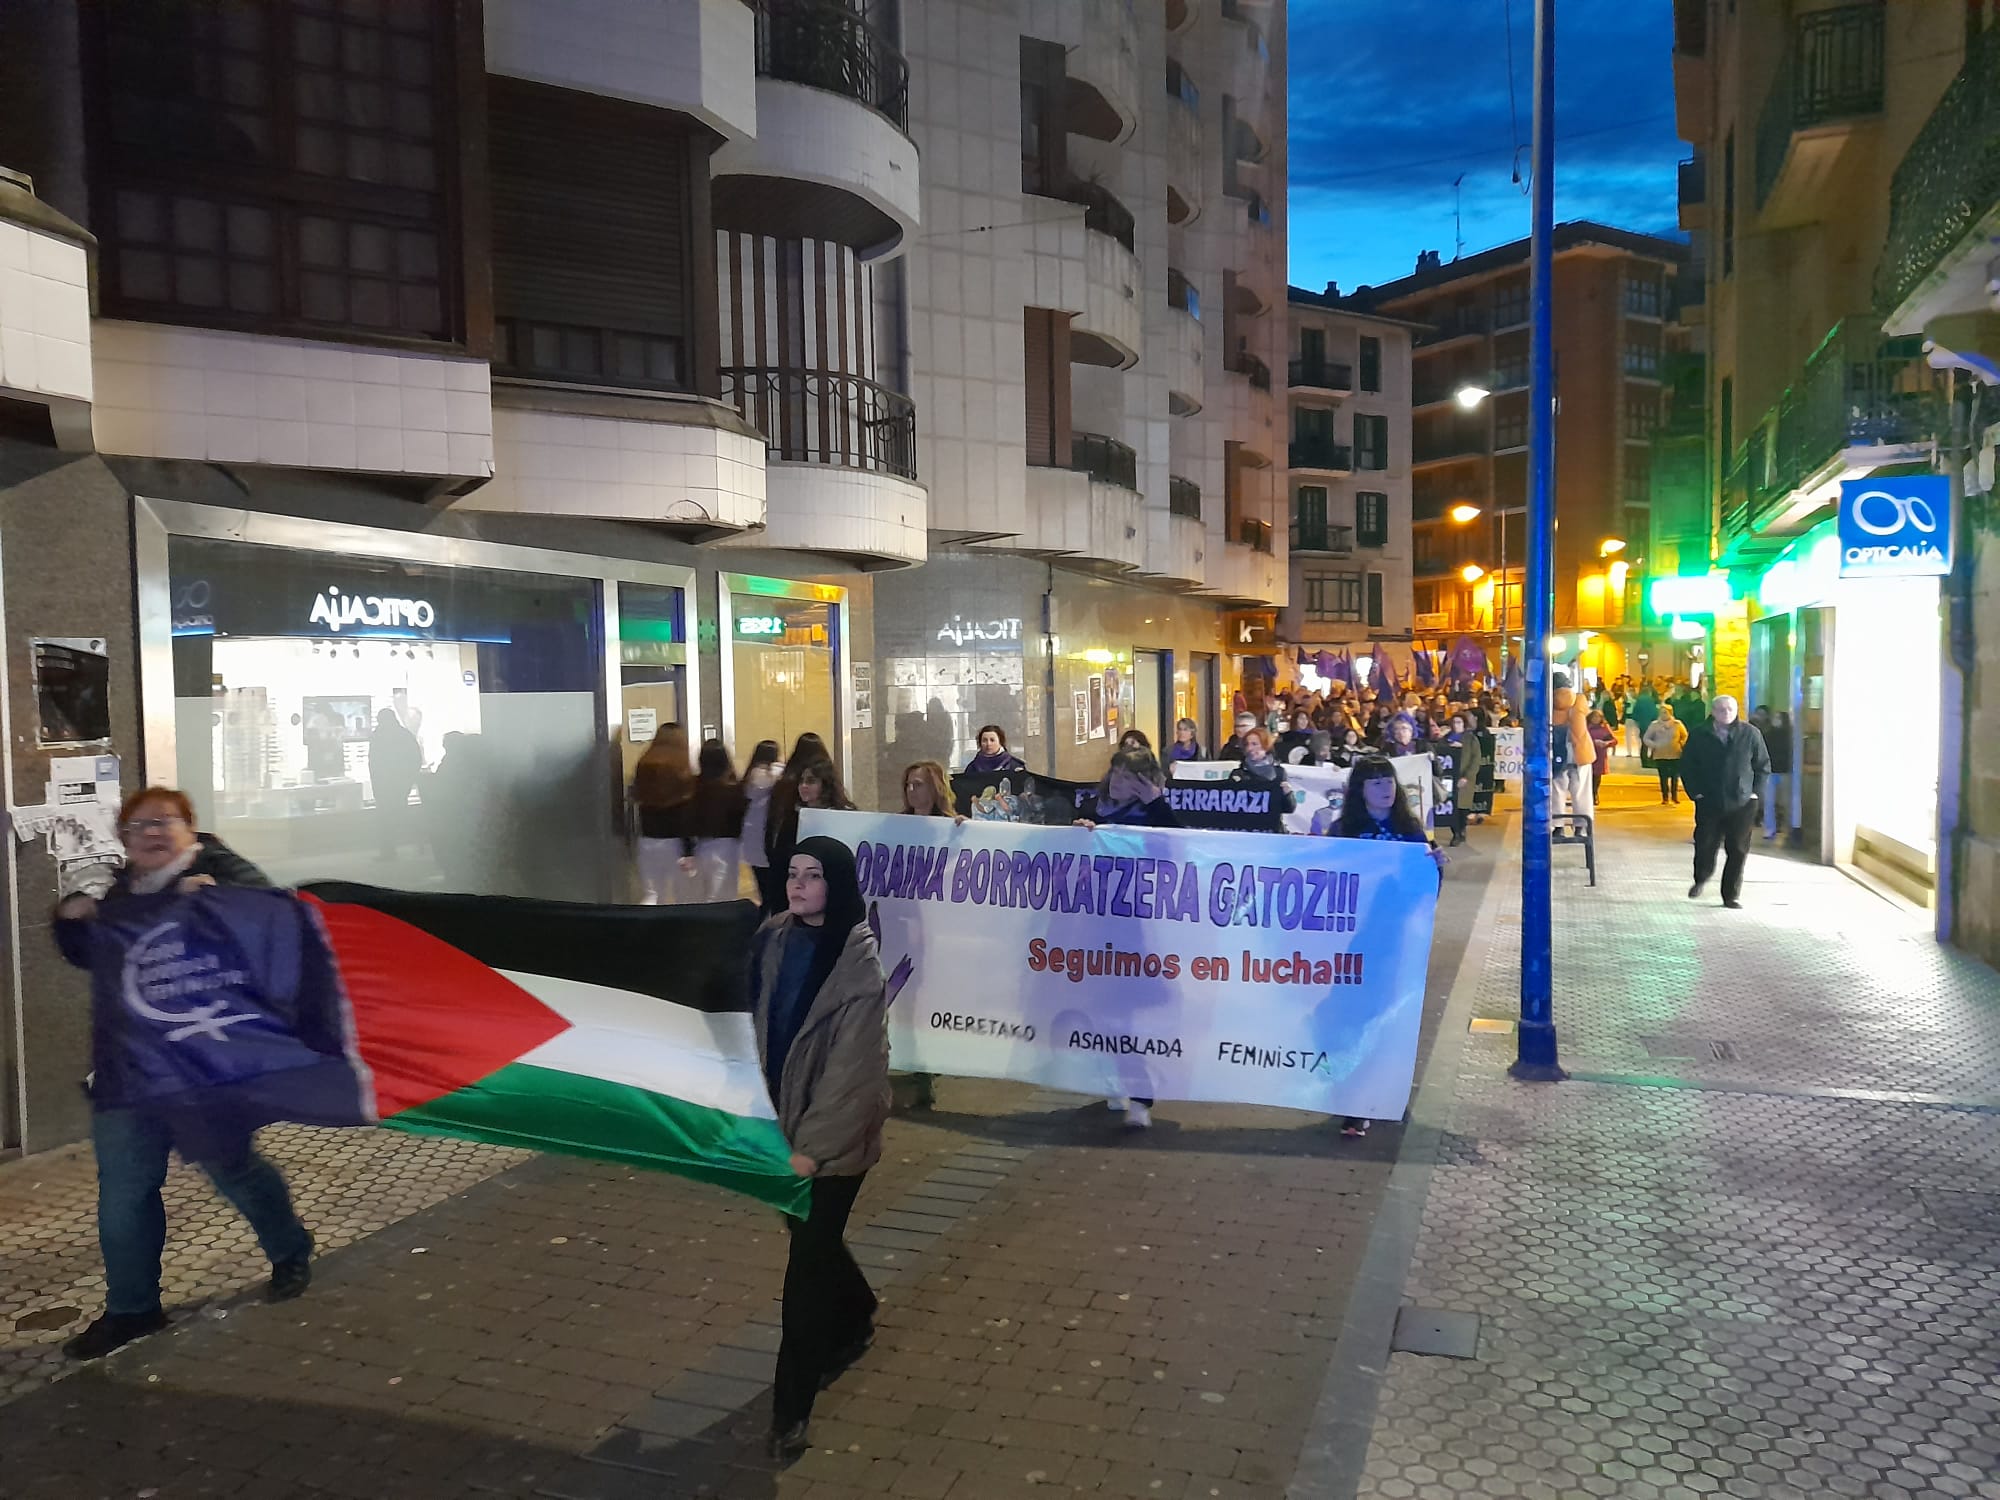 Oreretako asanblada feministak 'Oraina borrokatzera gatoz' dioen pankarta atera du kalera. Haren aurretik, Palestinako bandera.